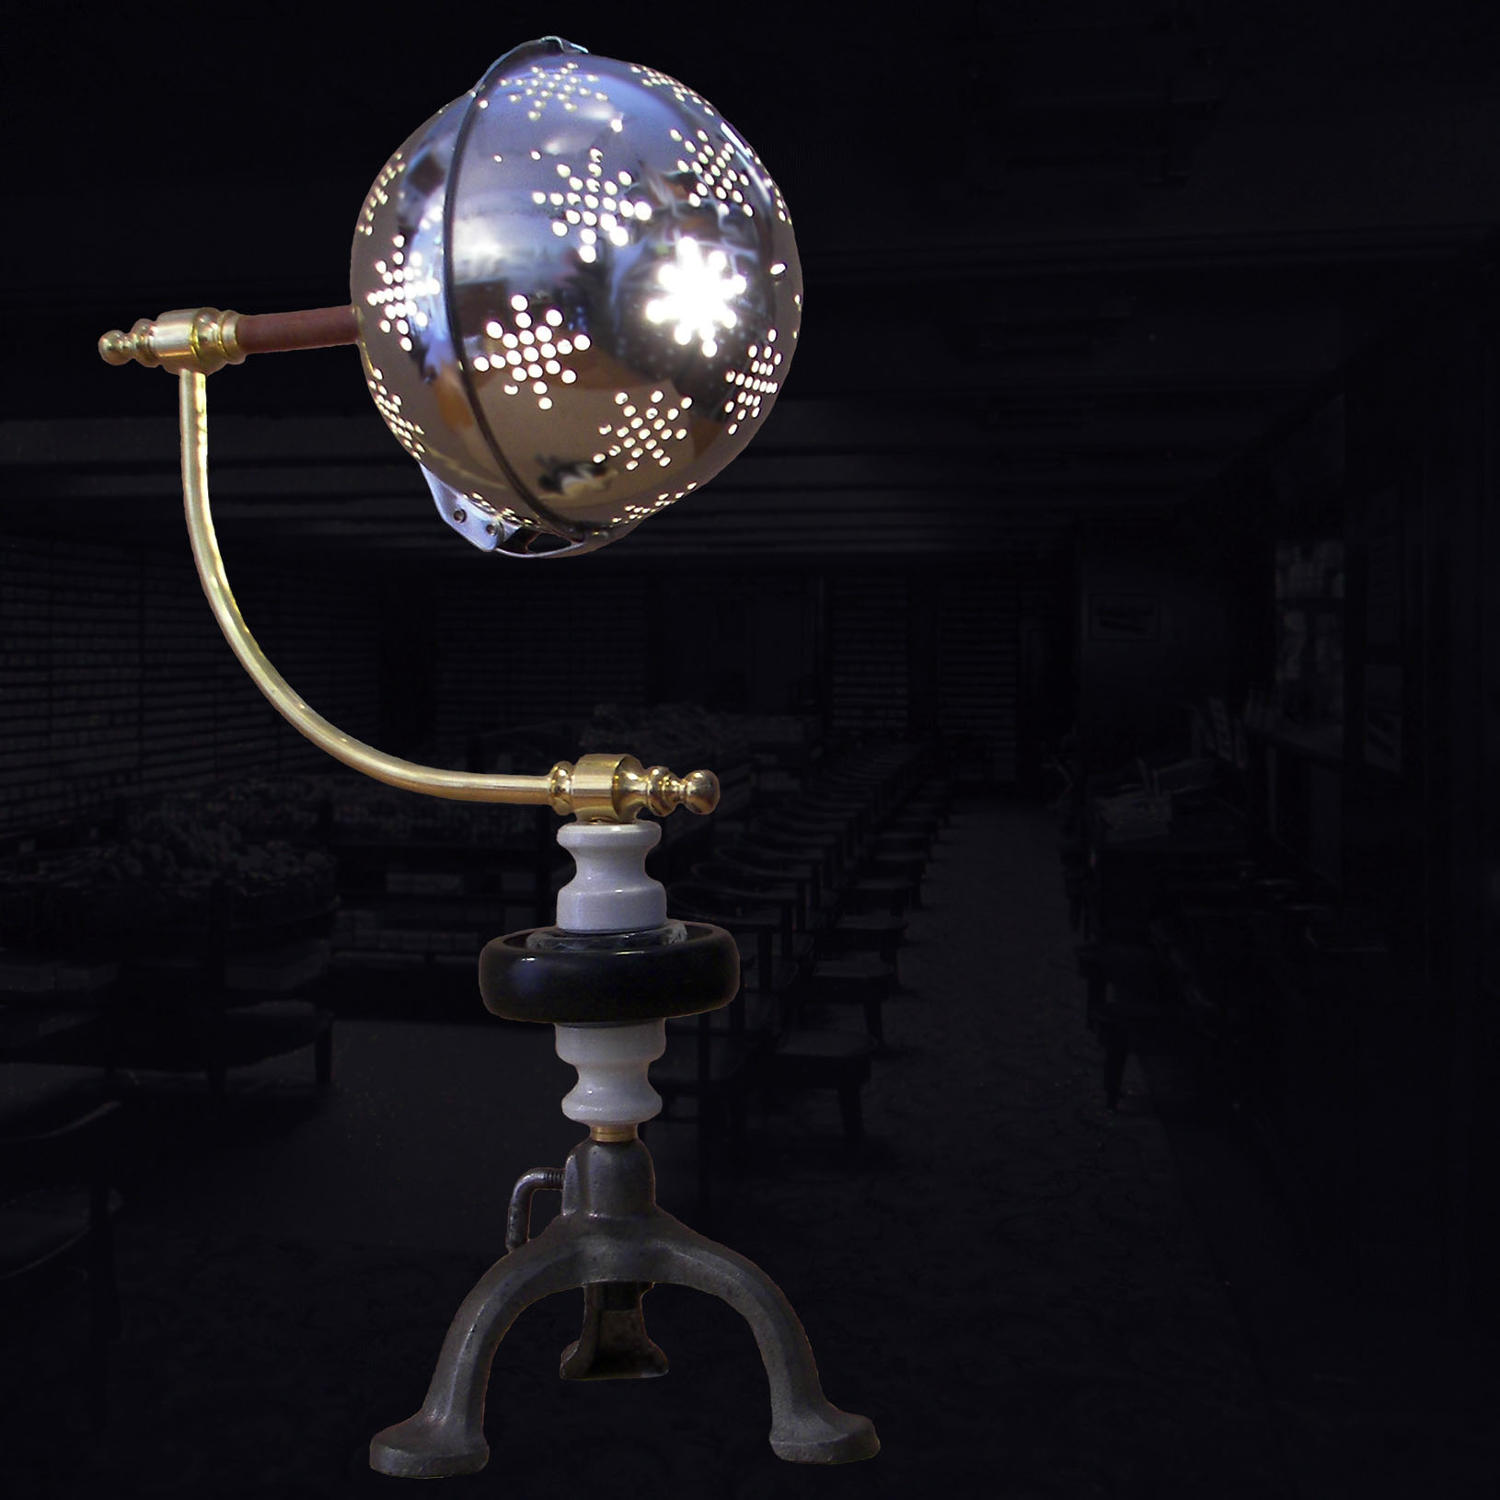 Unique lamp design - Conversation - by Gilles Bourlet Dartmouth